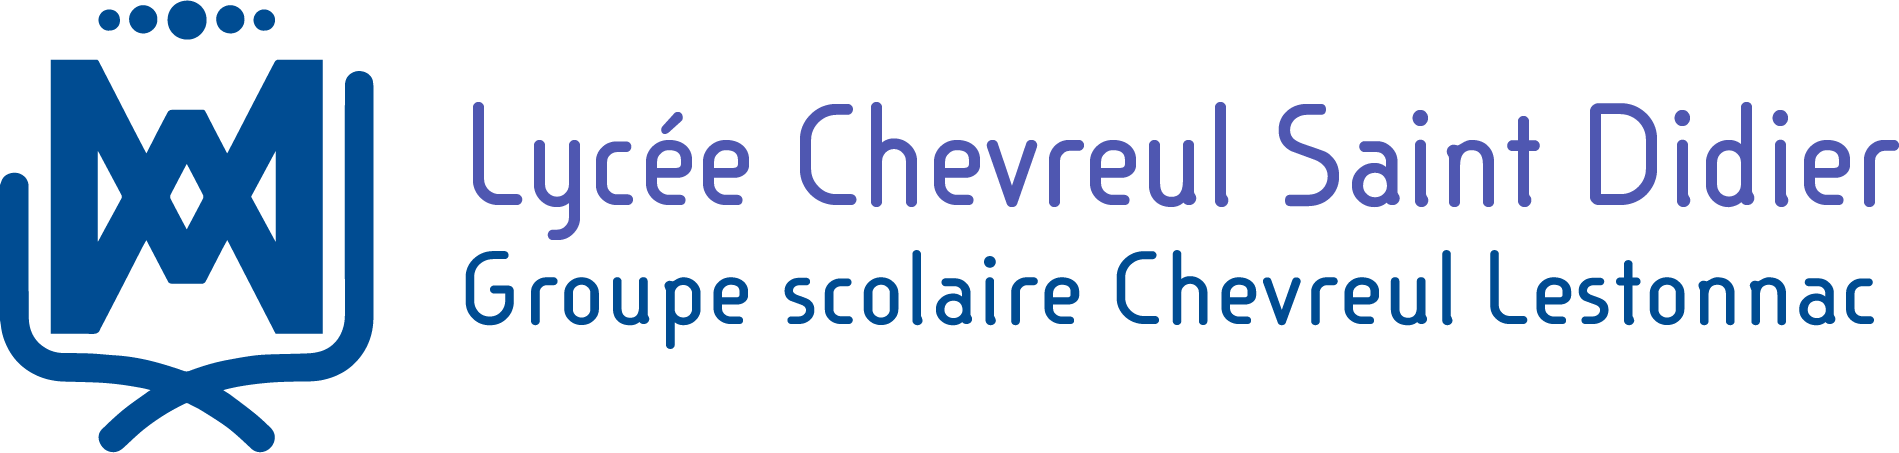 Lycée Chevreul Saint Didier